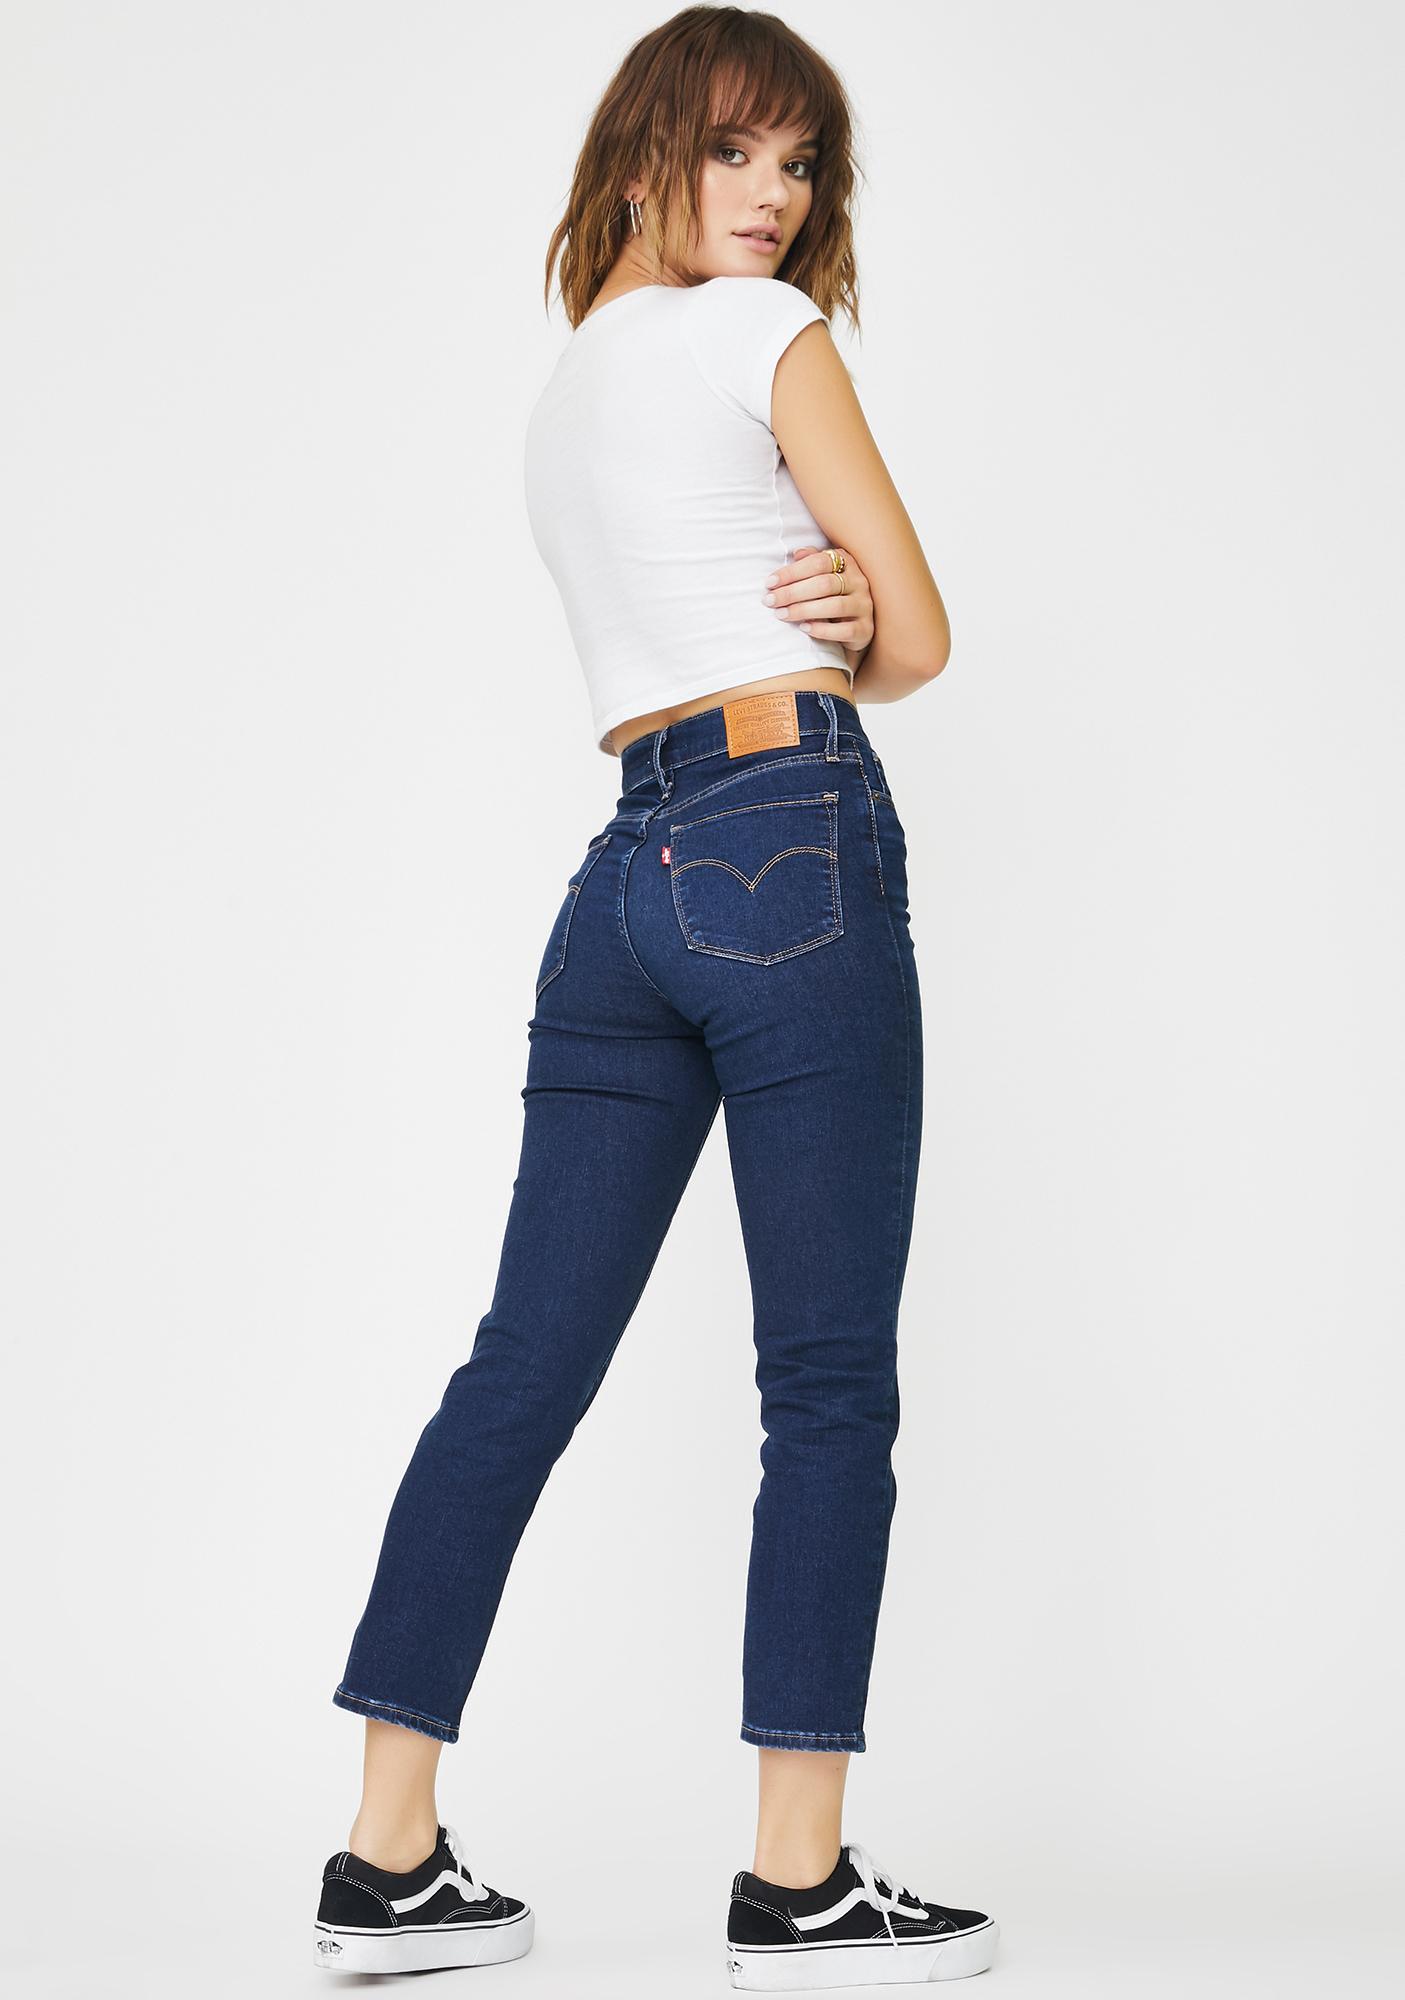 levis jeans london